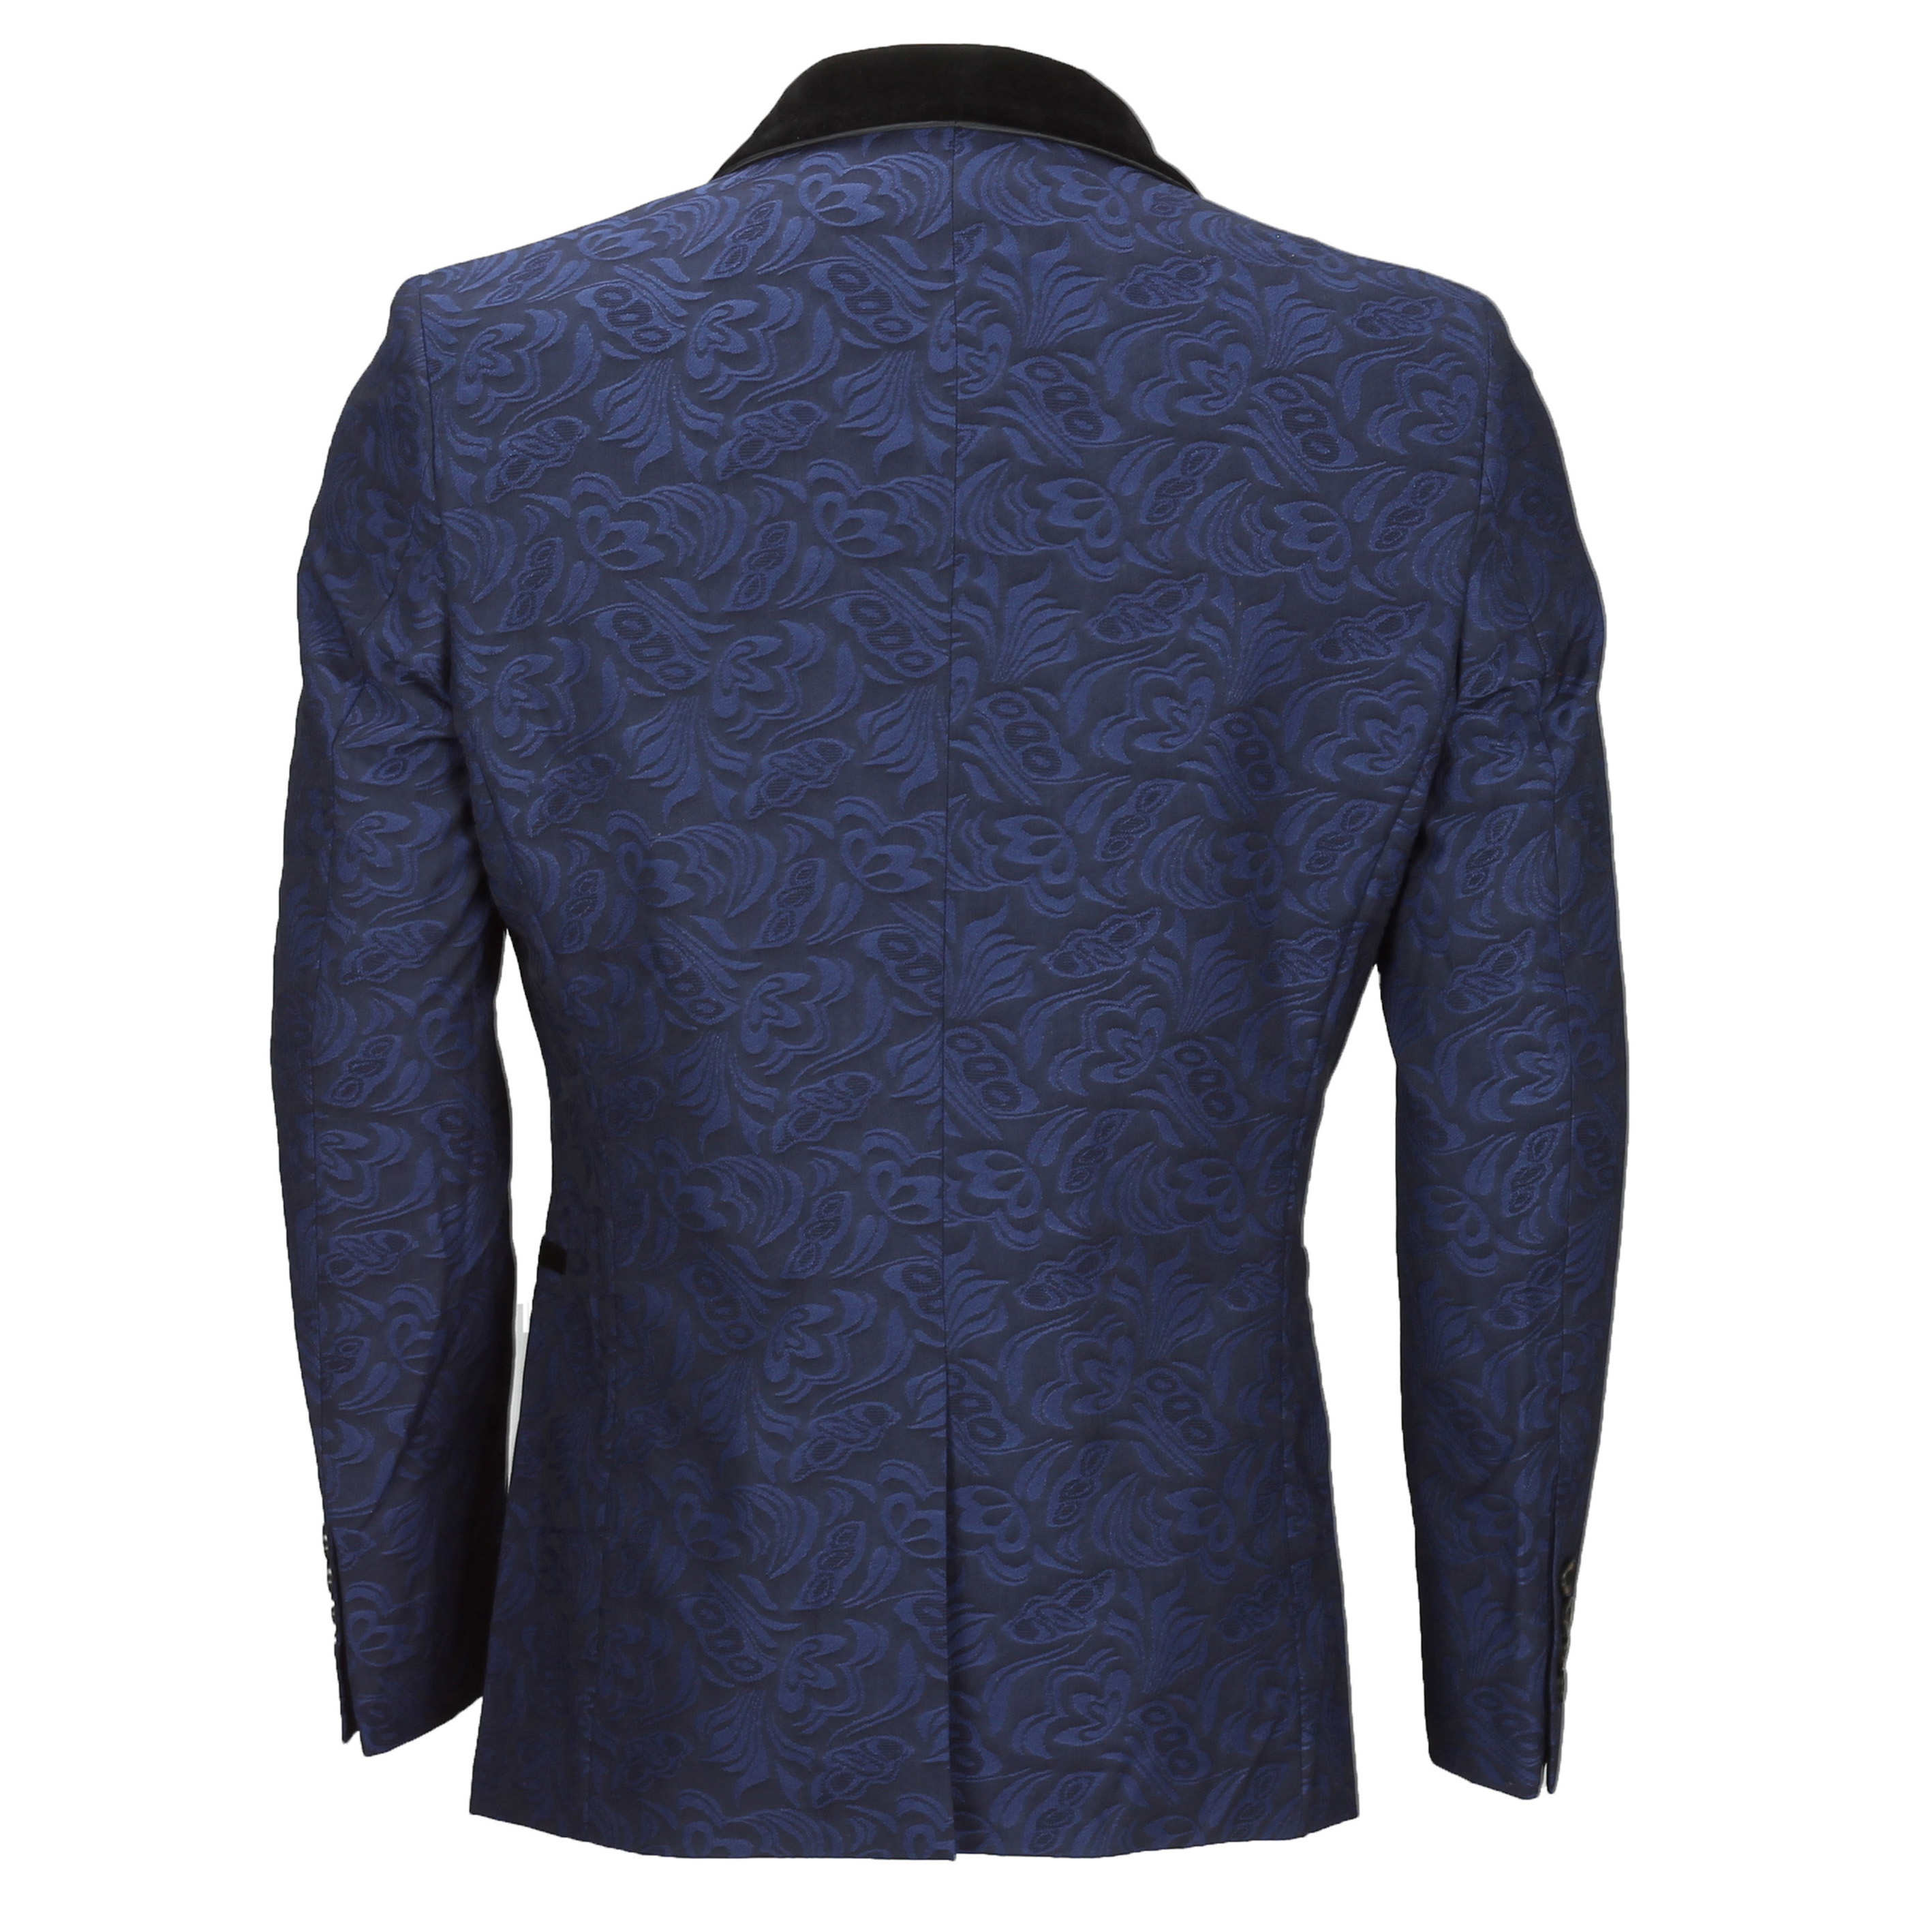 Mens Vintage Jacquard Floral Print Tuxedo Suit Jacket Black Velvet